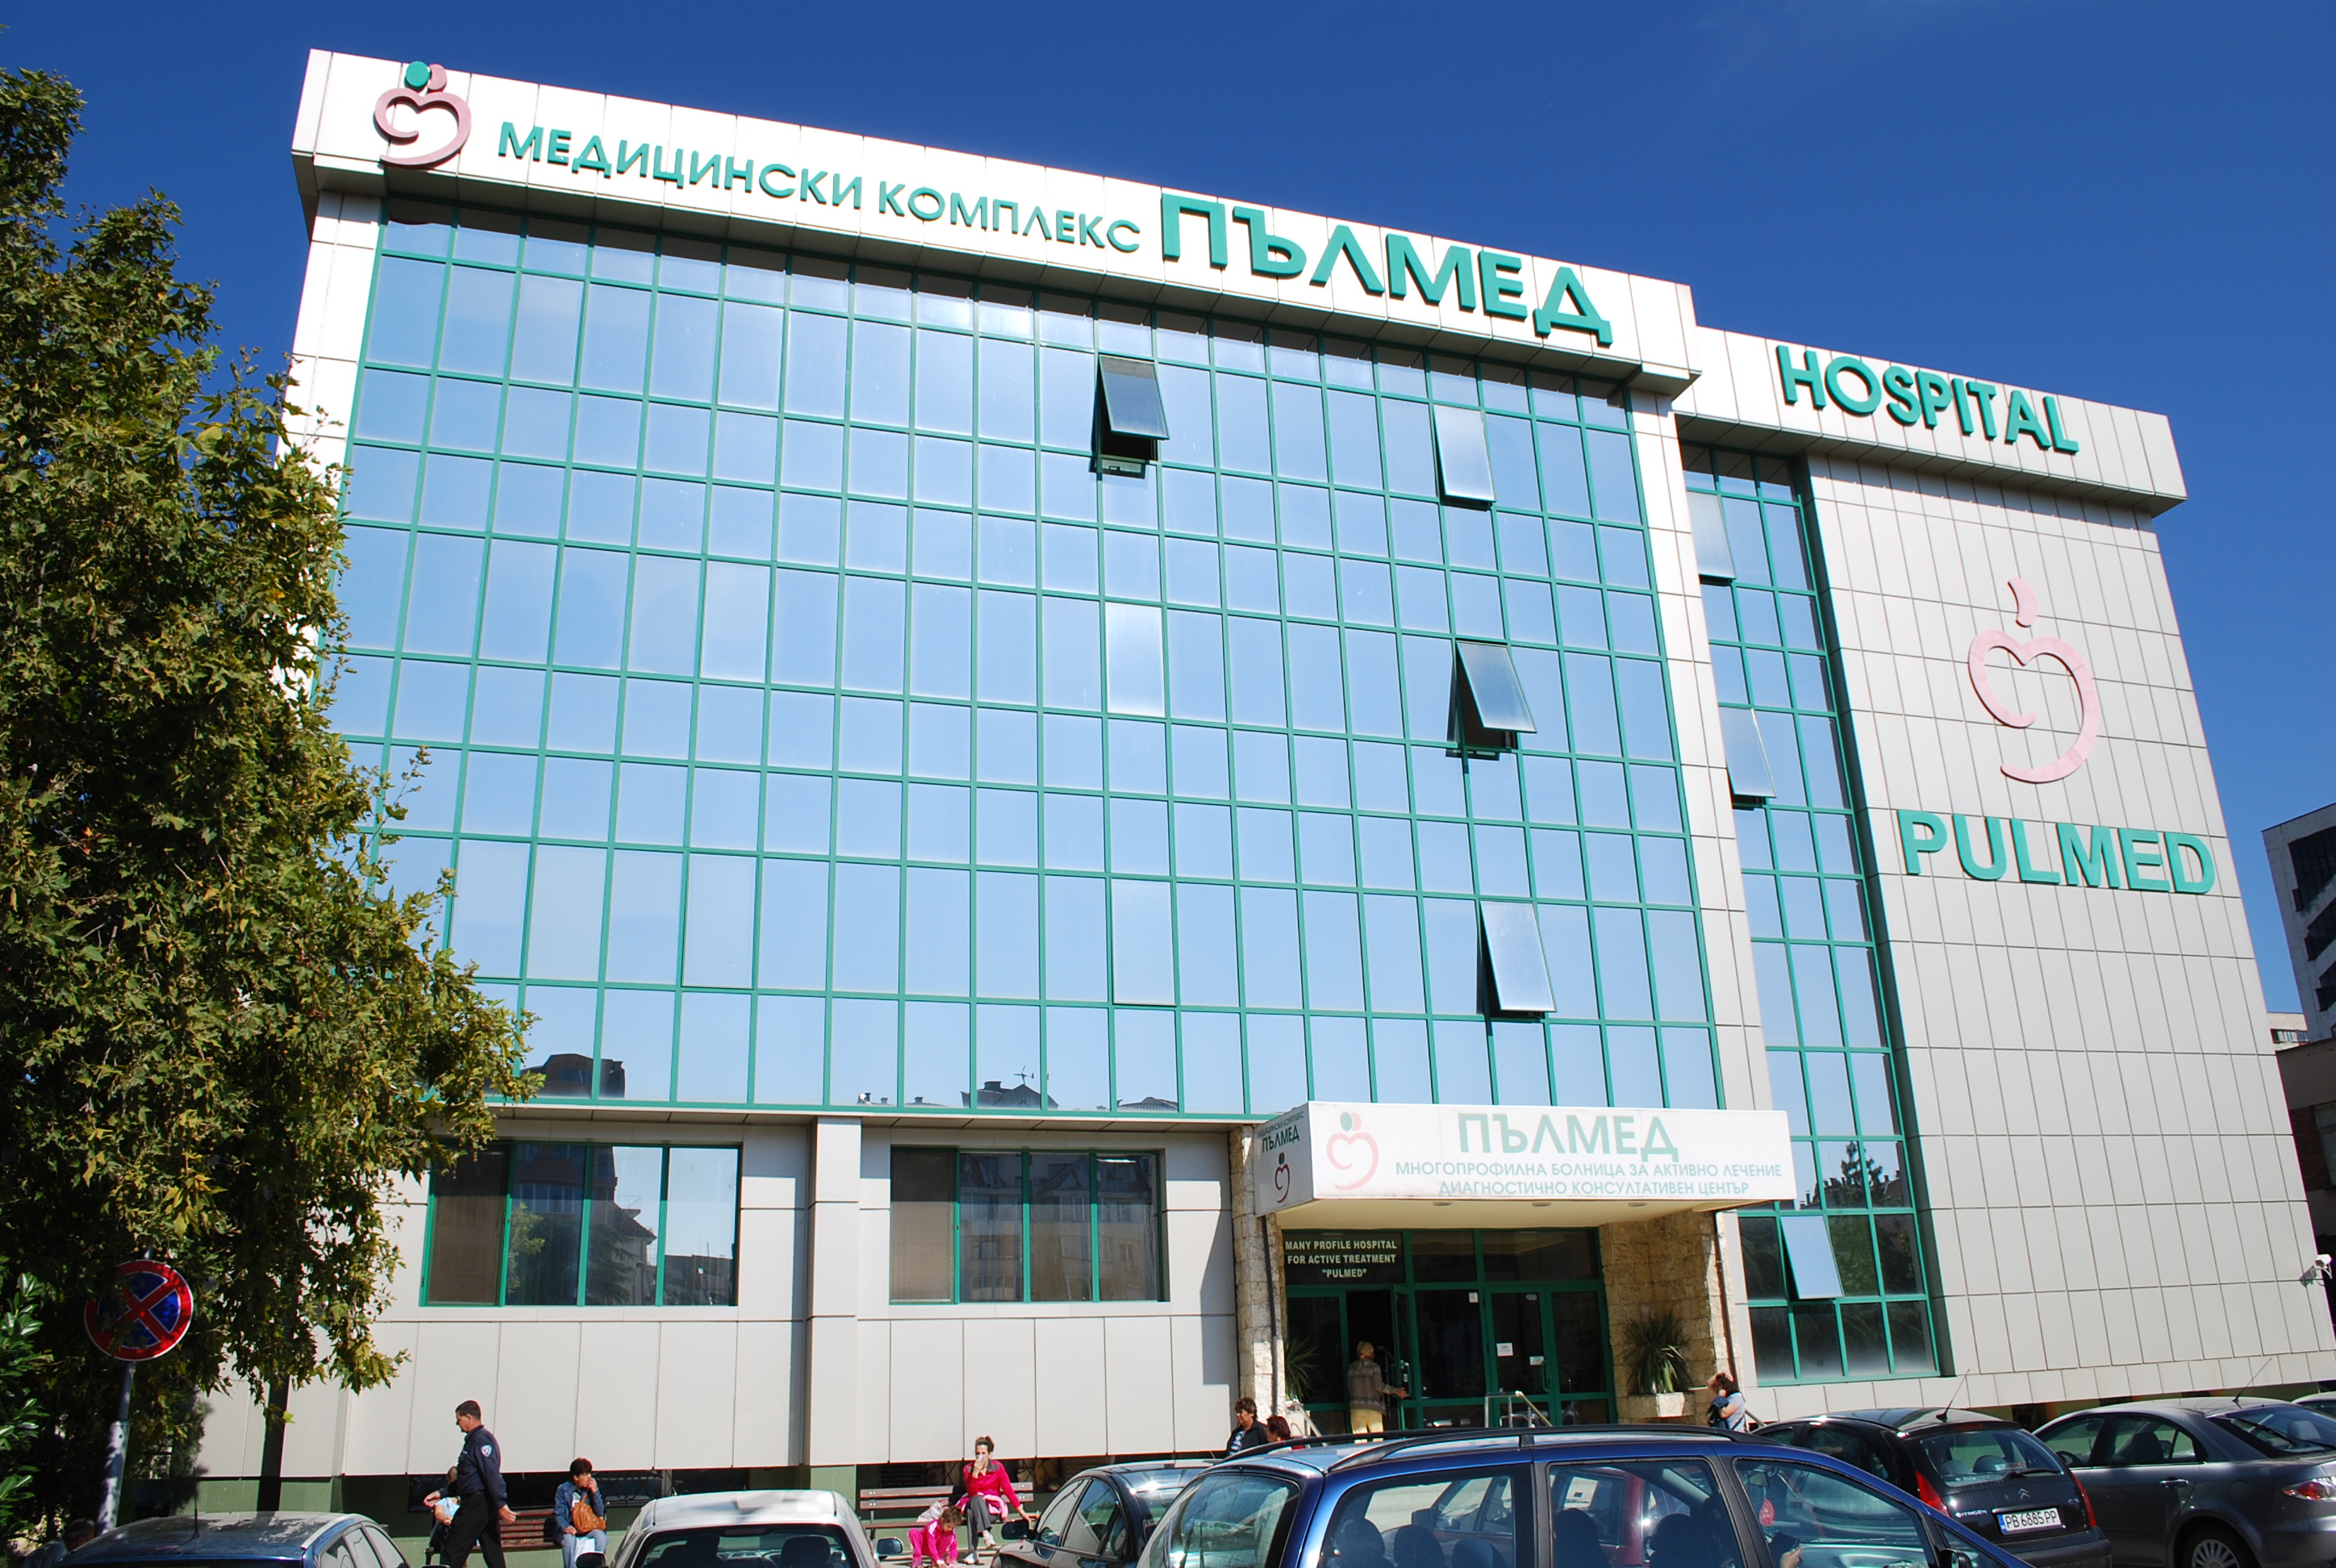 В УМБАЛ Пълмед е създаден център за съвременно лечение на исхемичен мозъчен инсулт. Всяка минута от началото на болеста до започване на лечението е от значение